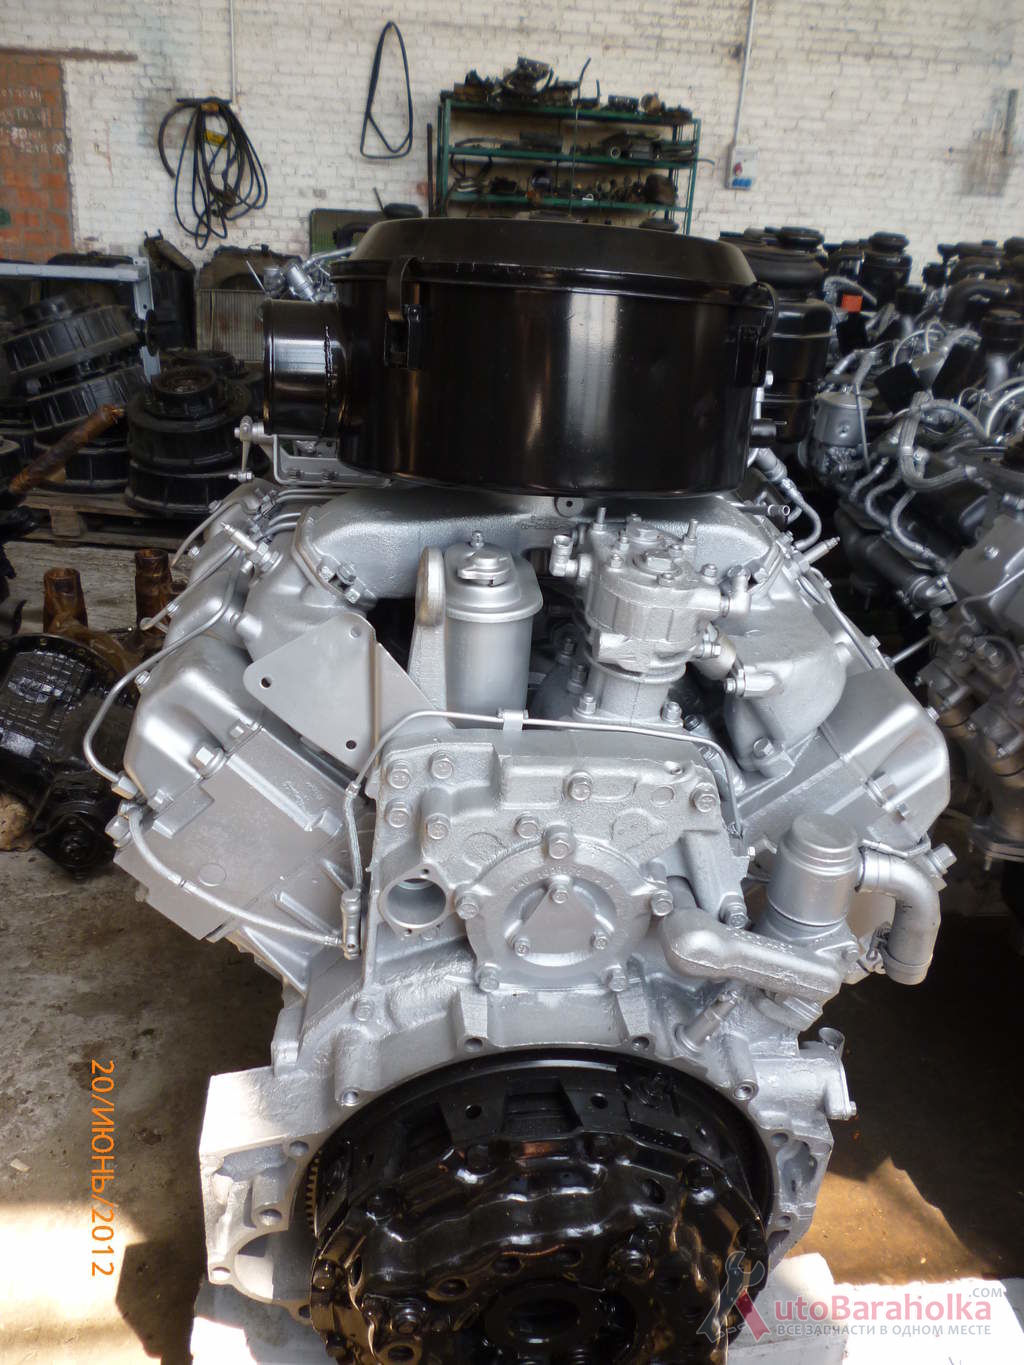 Продам новый двигатель Камаз 740.10 В наличии есть двигатели после кап ремонта Мелитополь 